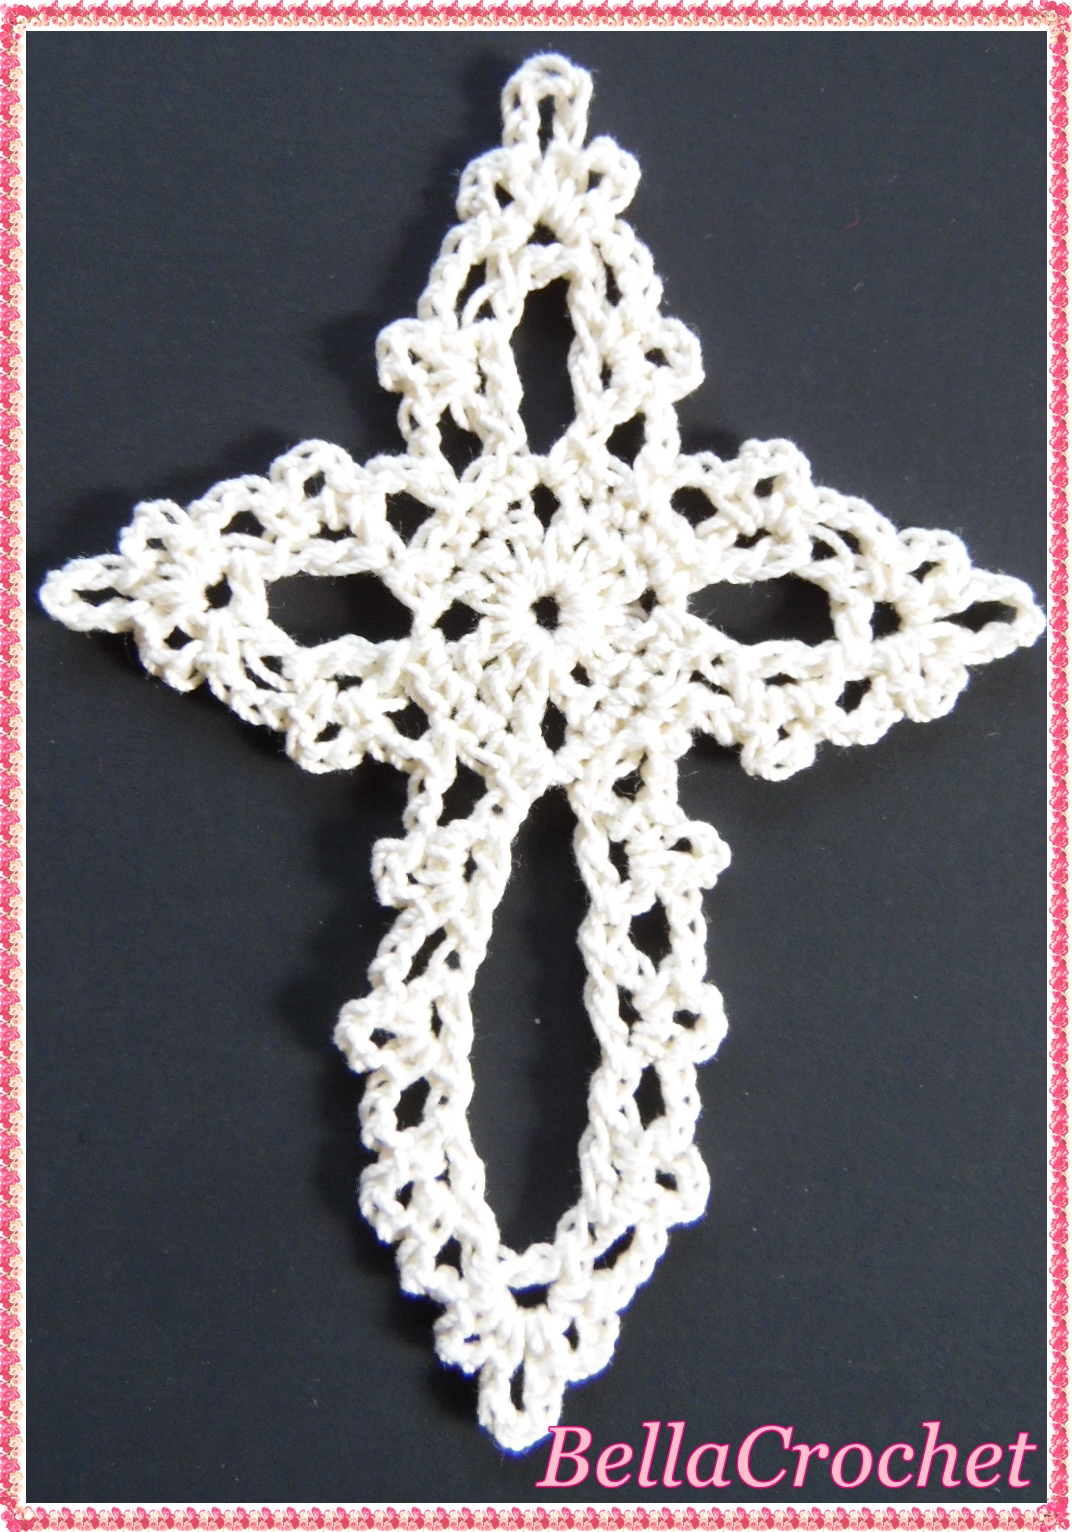 Crochet Cross Pattern Bellacrochet Dainty Cross Bookmark Or Ornament A Free Crochet